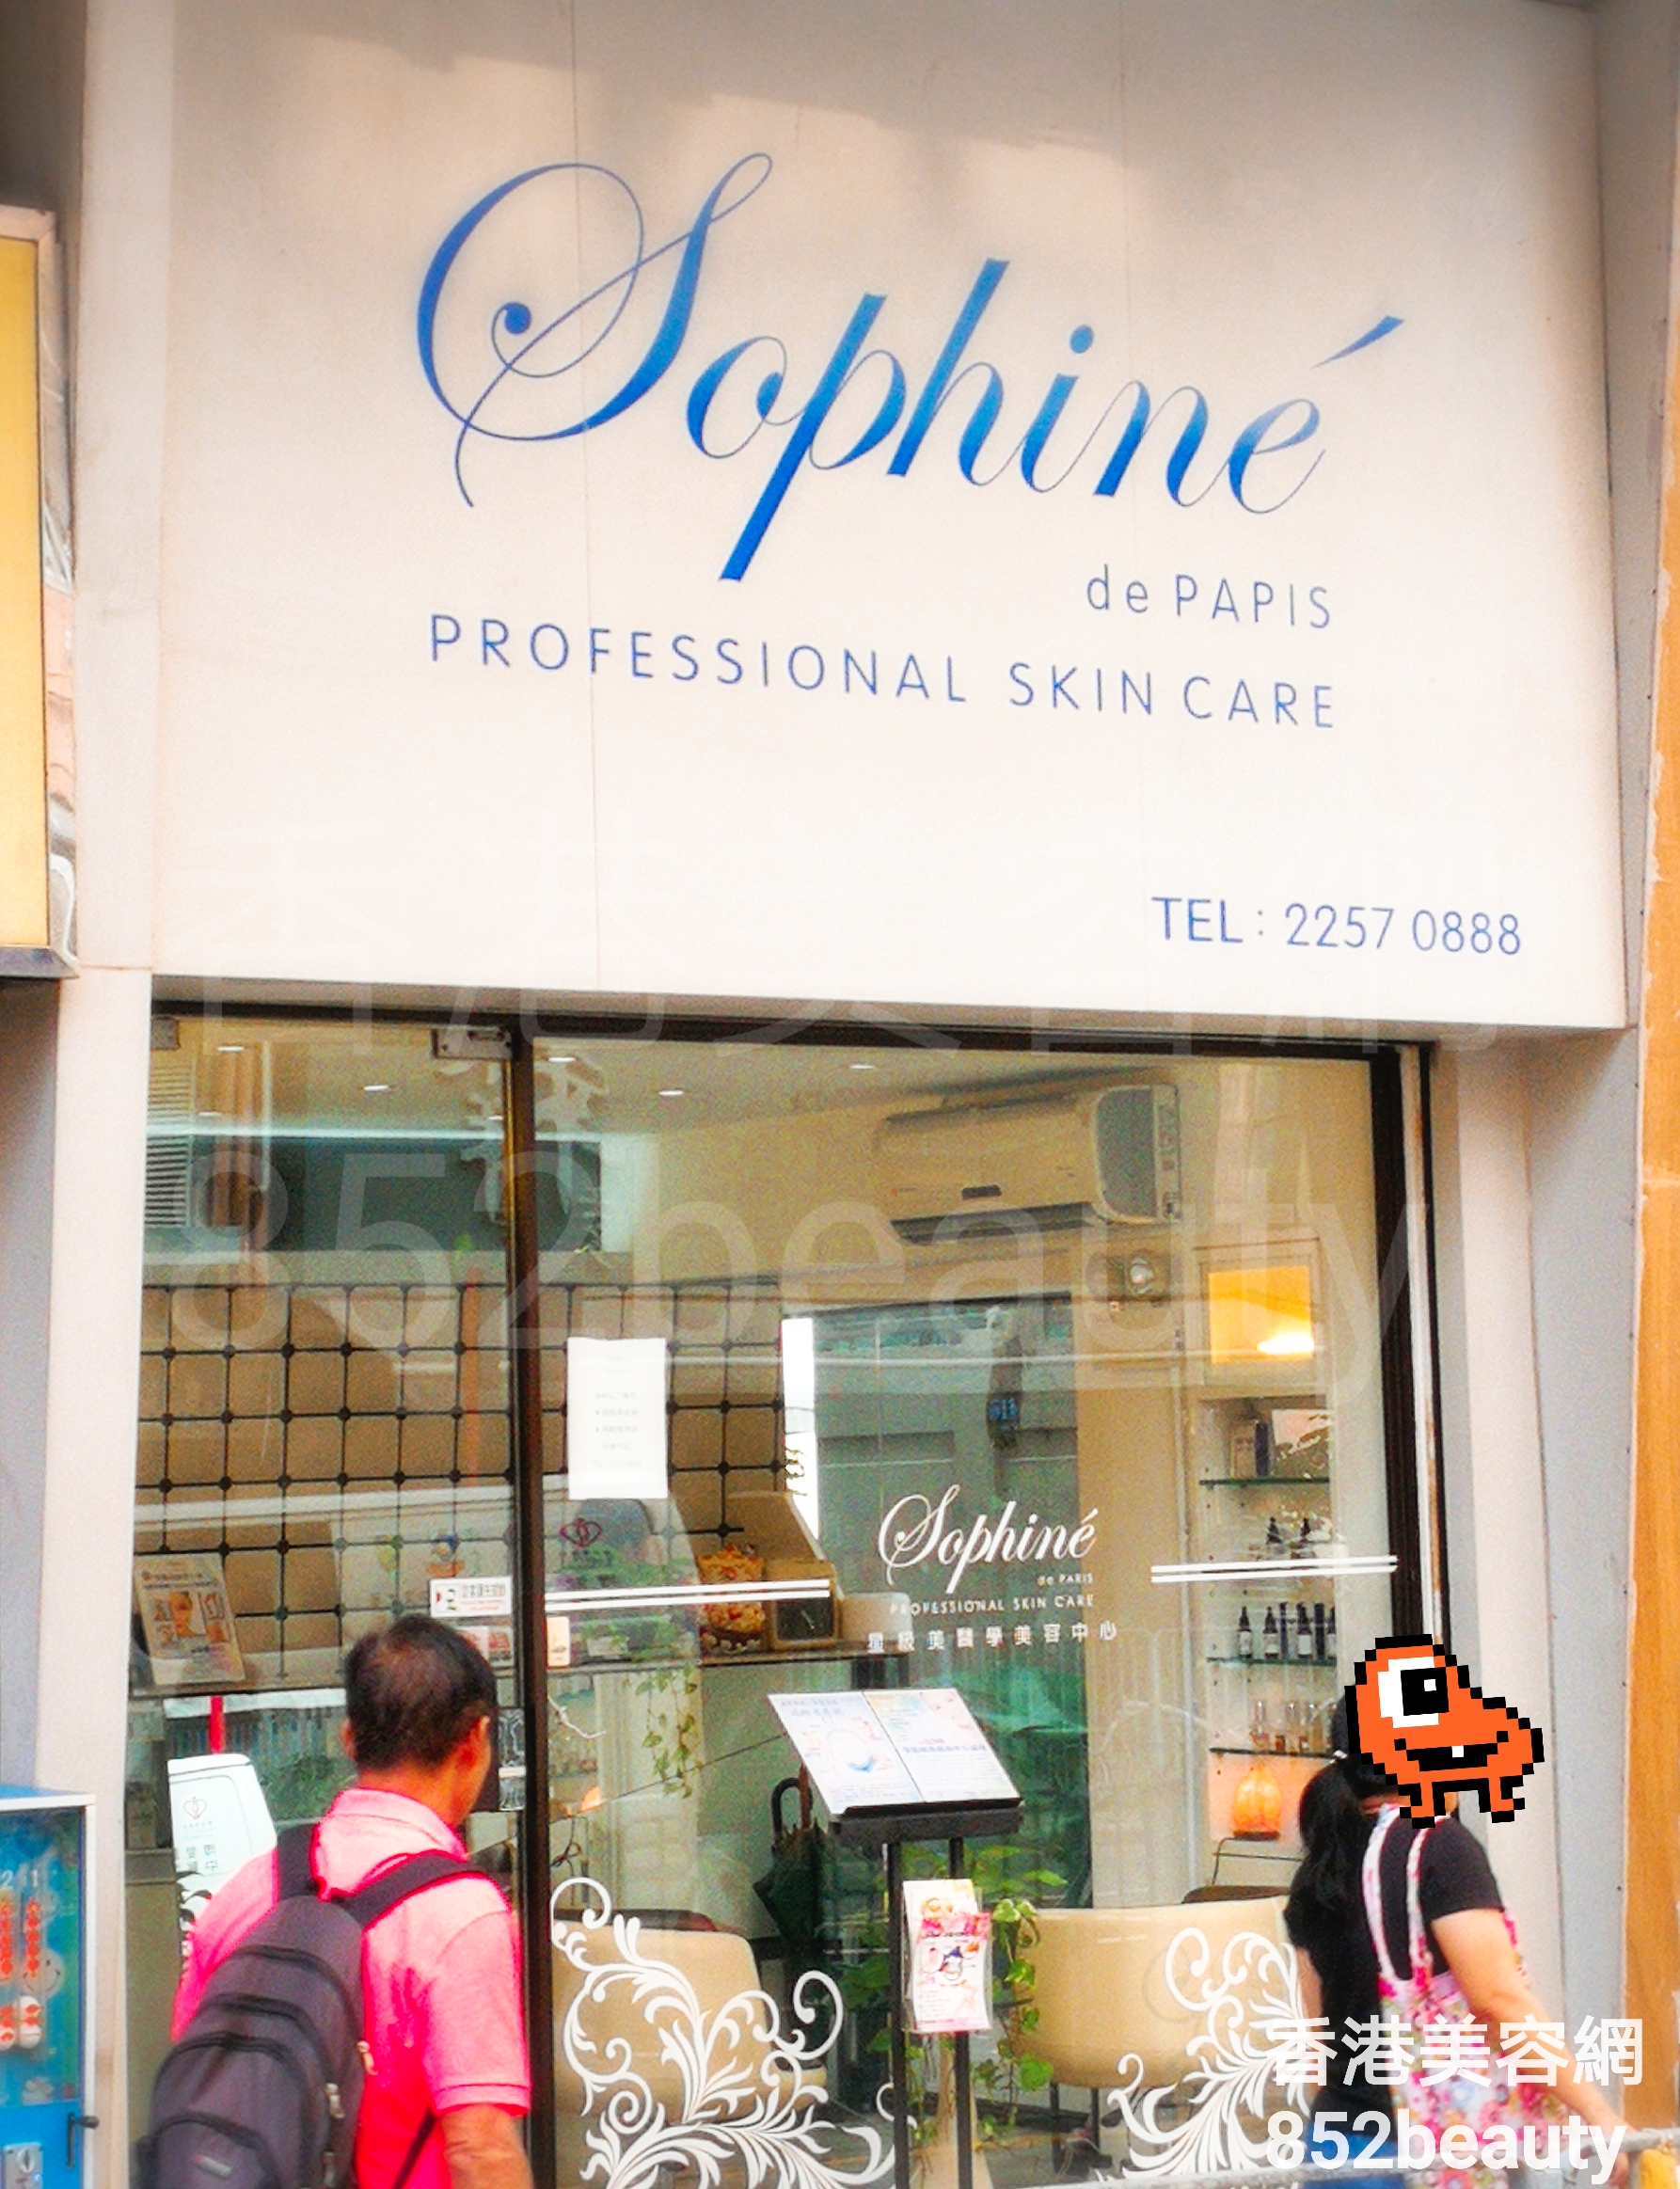 醫學美容: Sophine de PARIS 星級美醫學美容中心